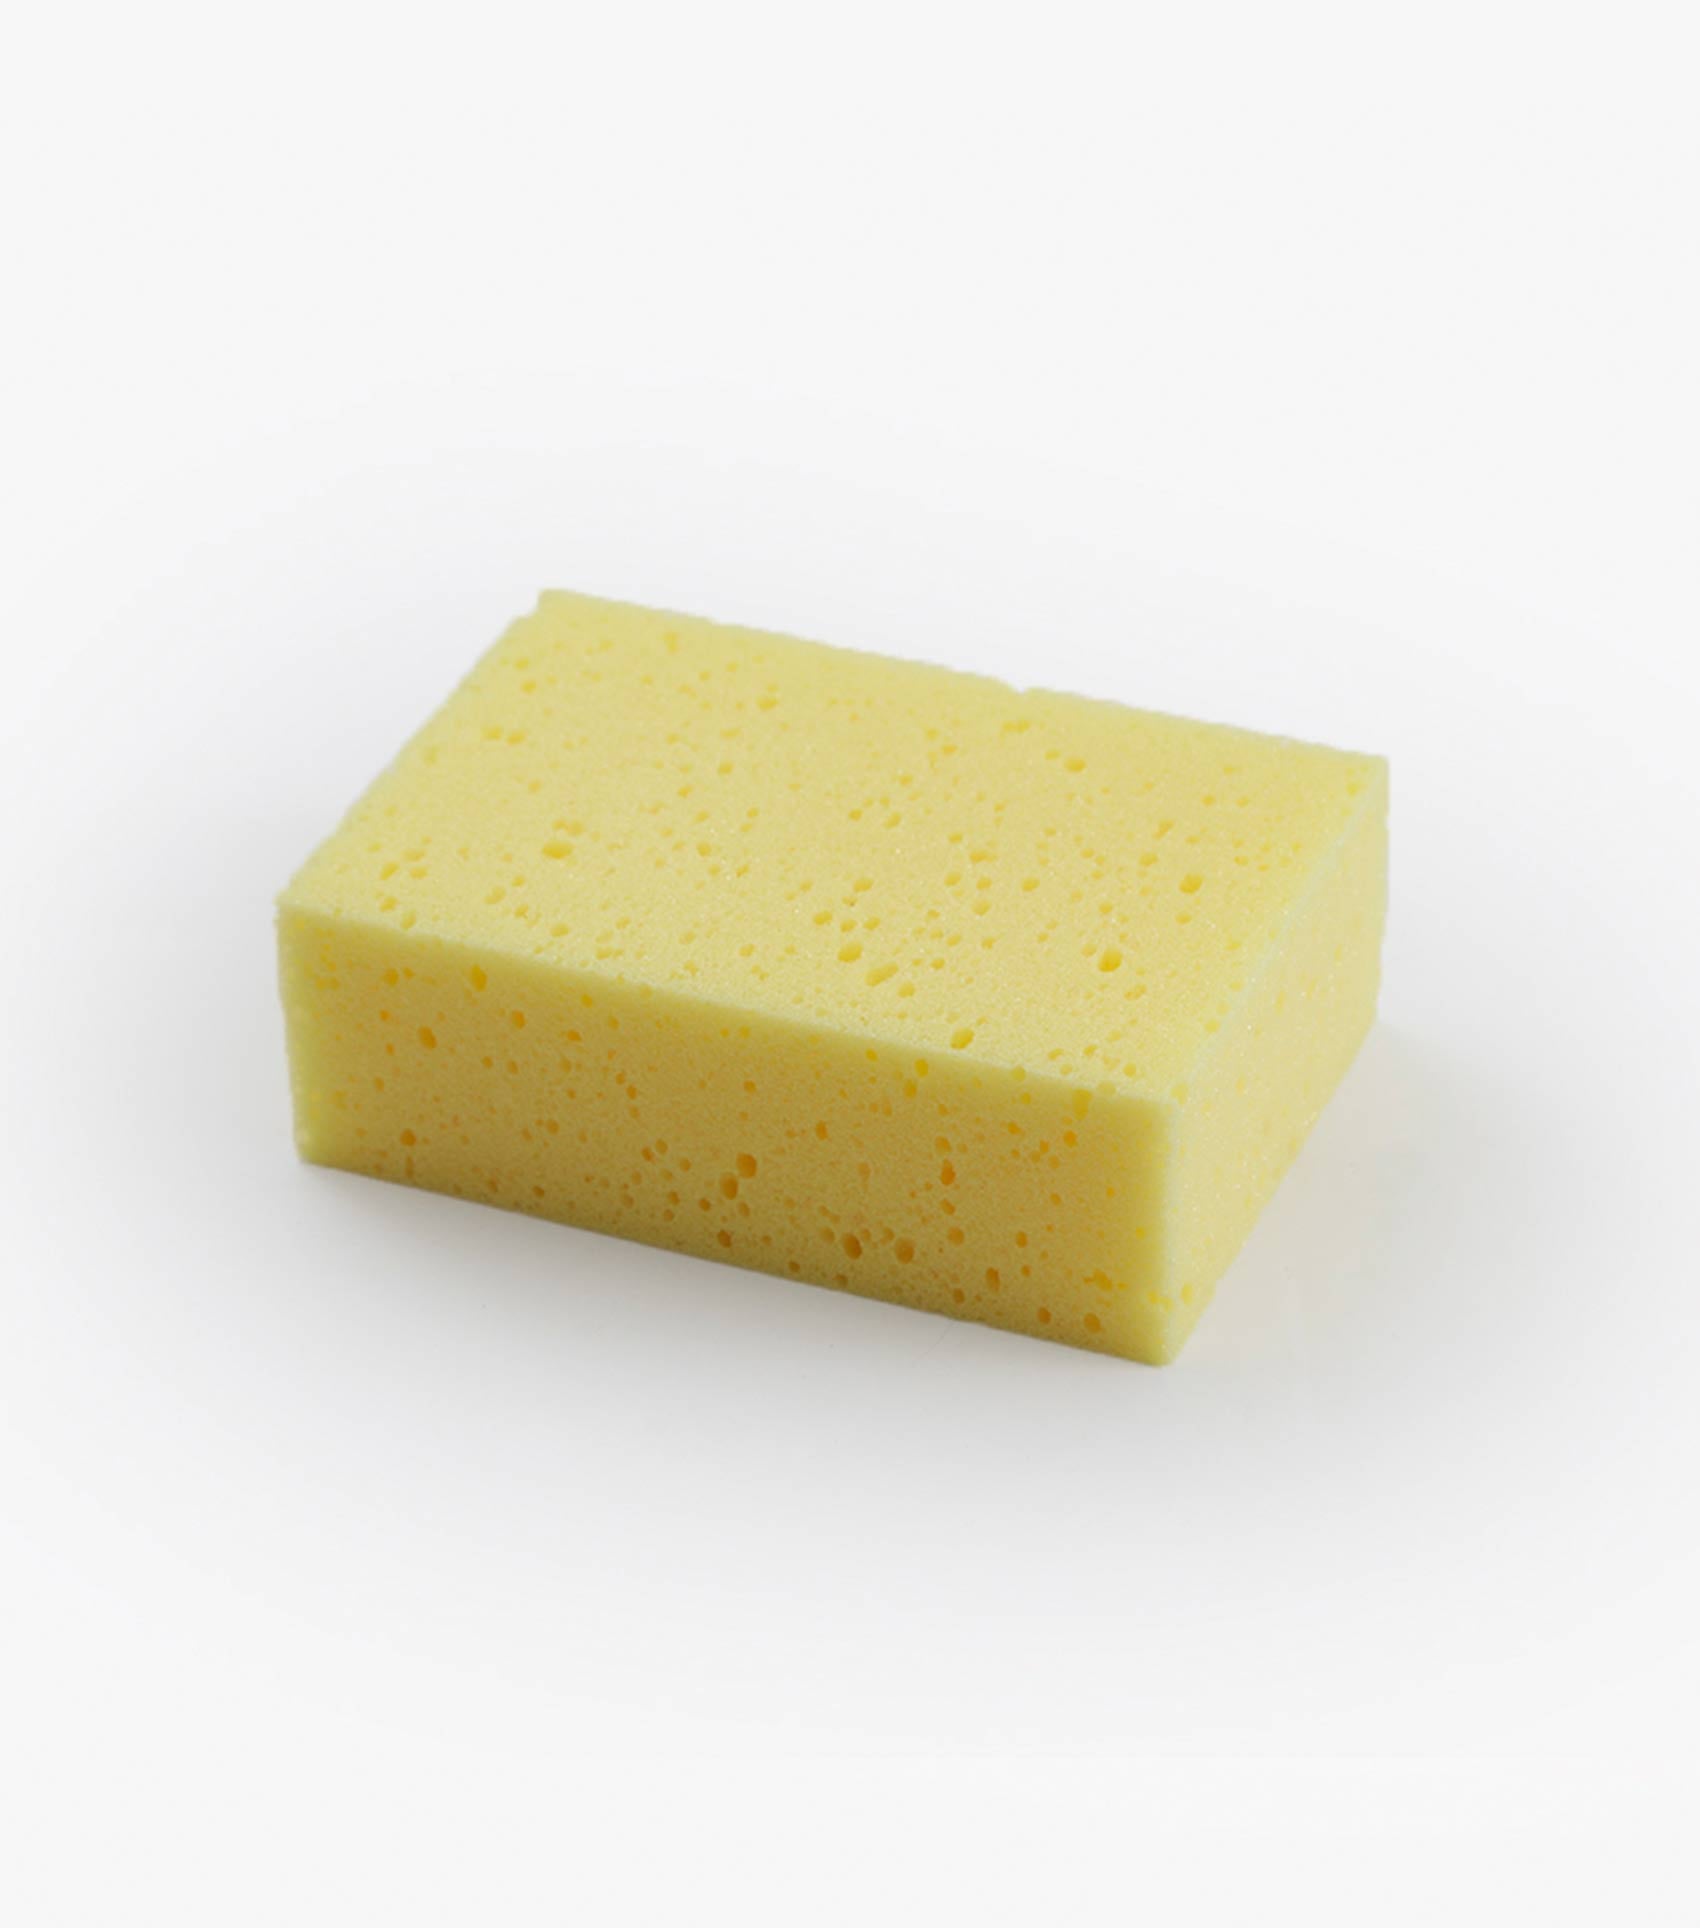 Description:Quick-Soak Sponge